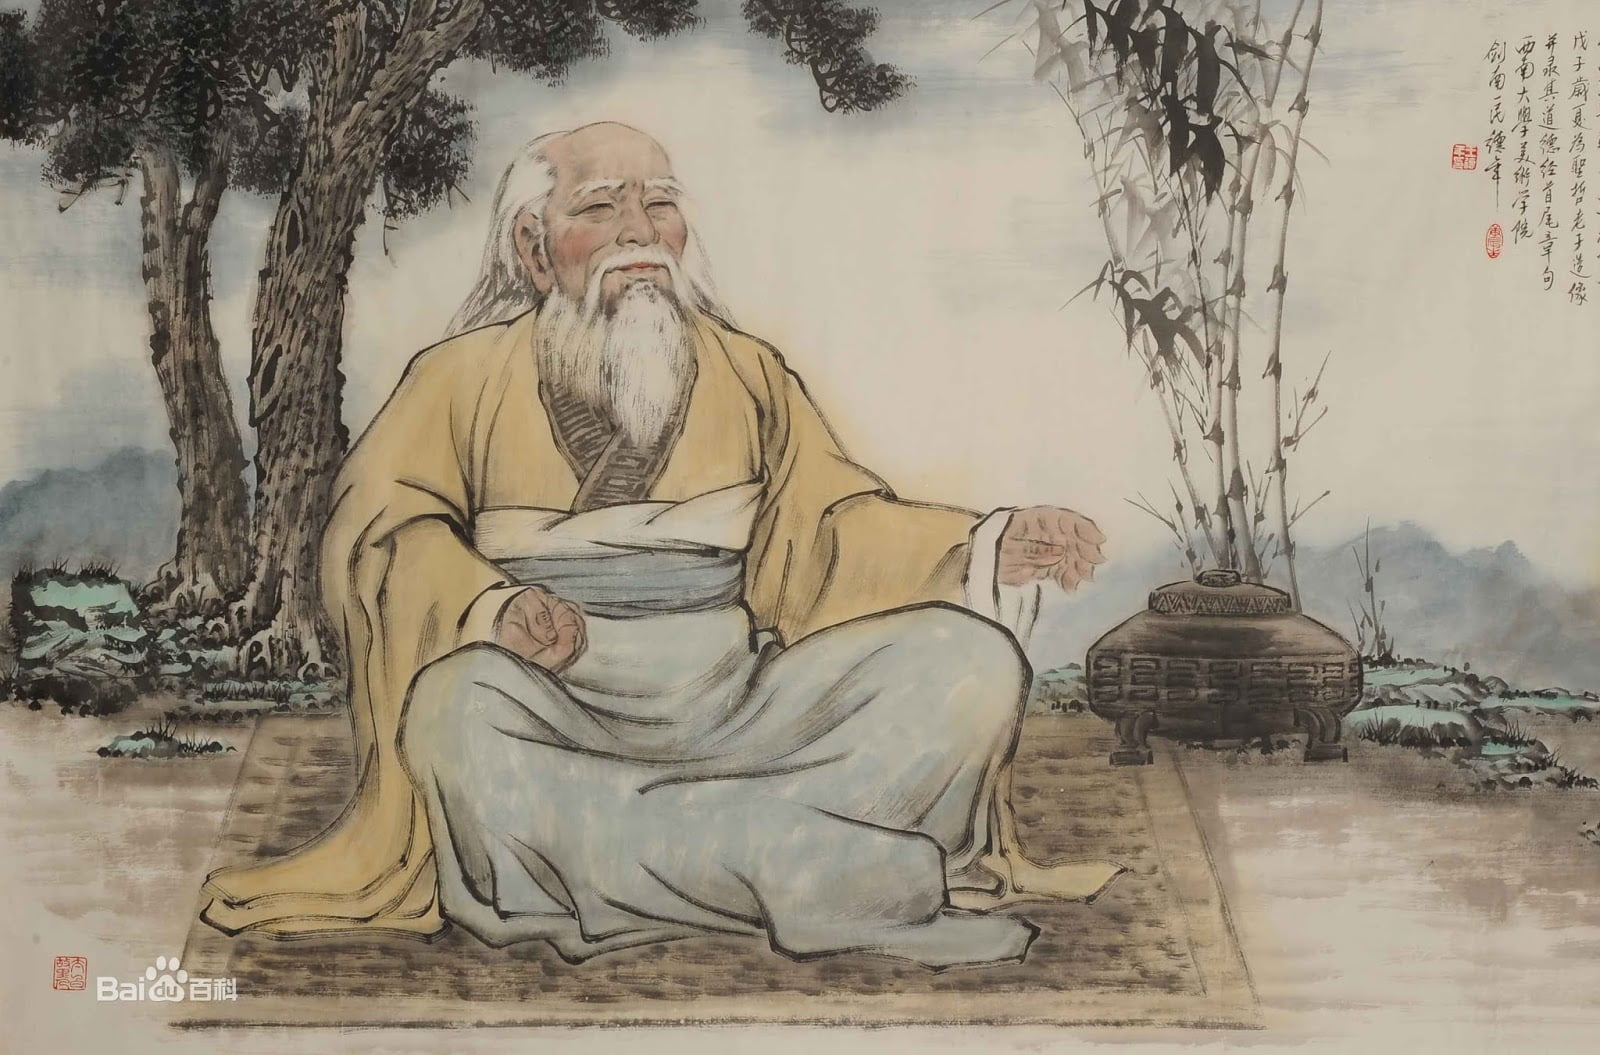 Ж мудрый. Китайский философ Лао-Цзы. Китайская философия Лао Цзы. Лао Цзы Конфуций Лао Цзы. Лао дзы Дао де дзы.